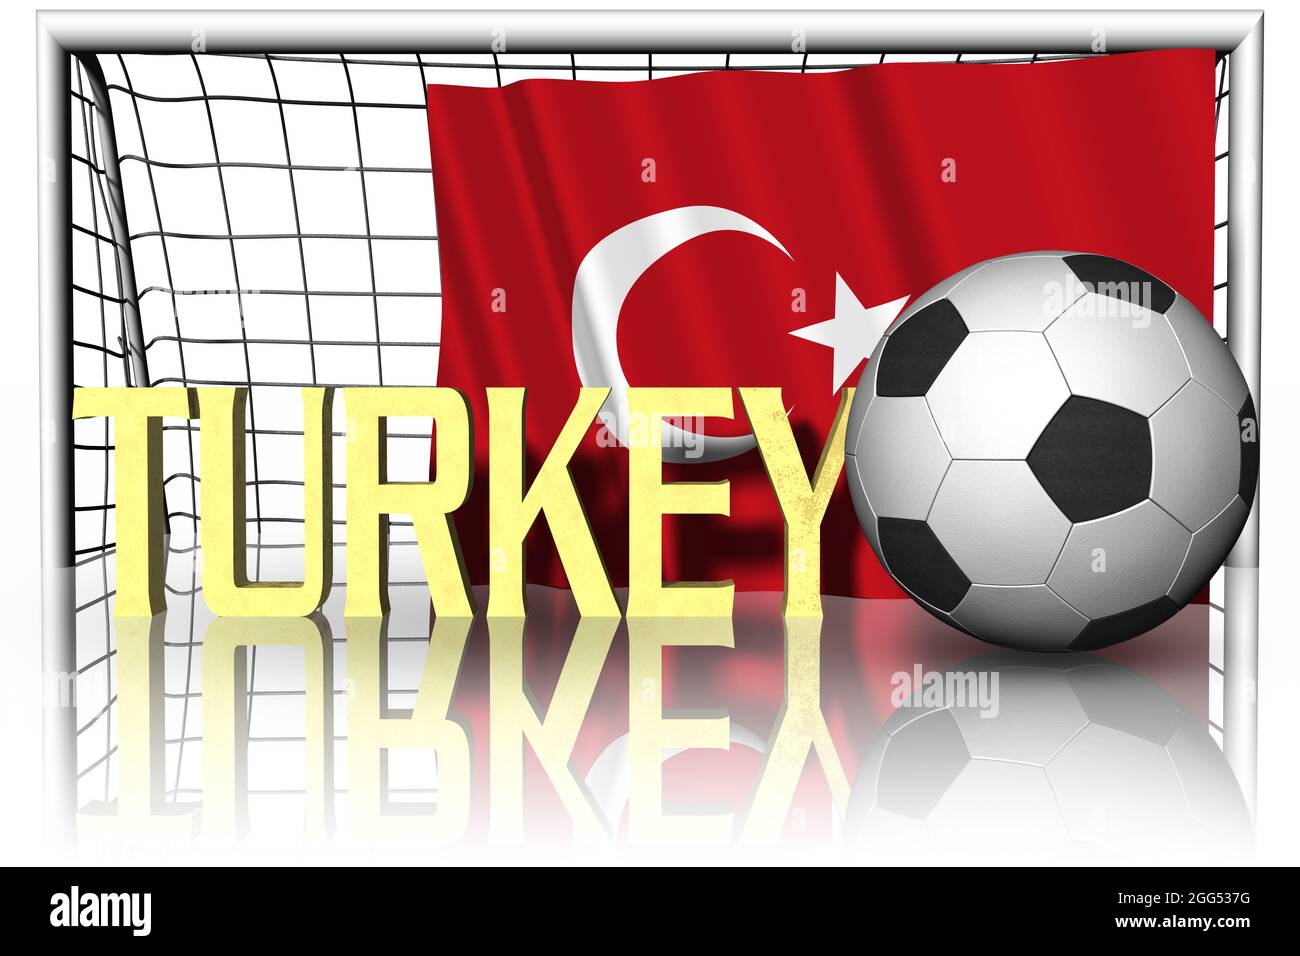 Turquie. Drapeau national avec ballon de football au premier plan. Football sportif - Illustration 3D Banque D'Images